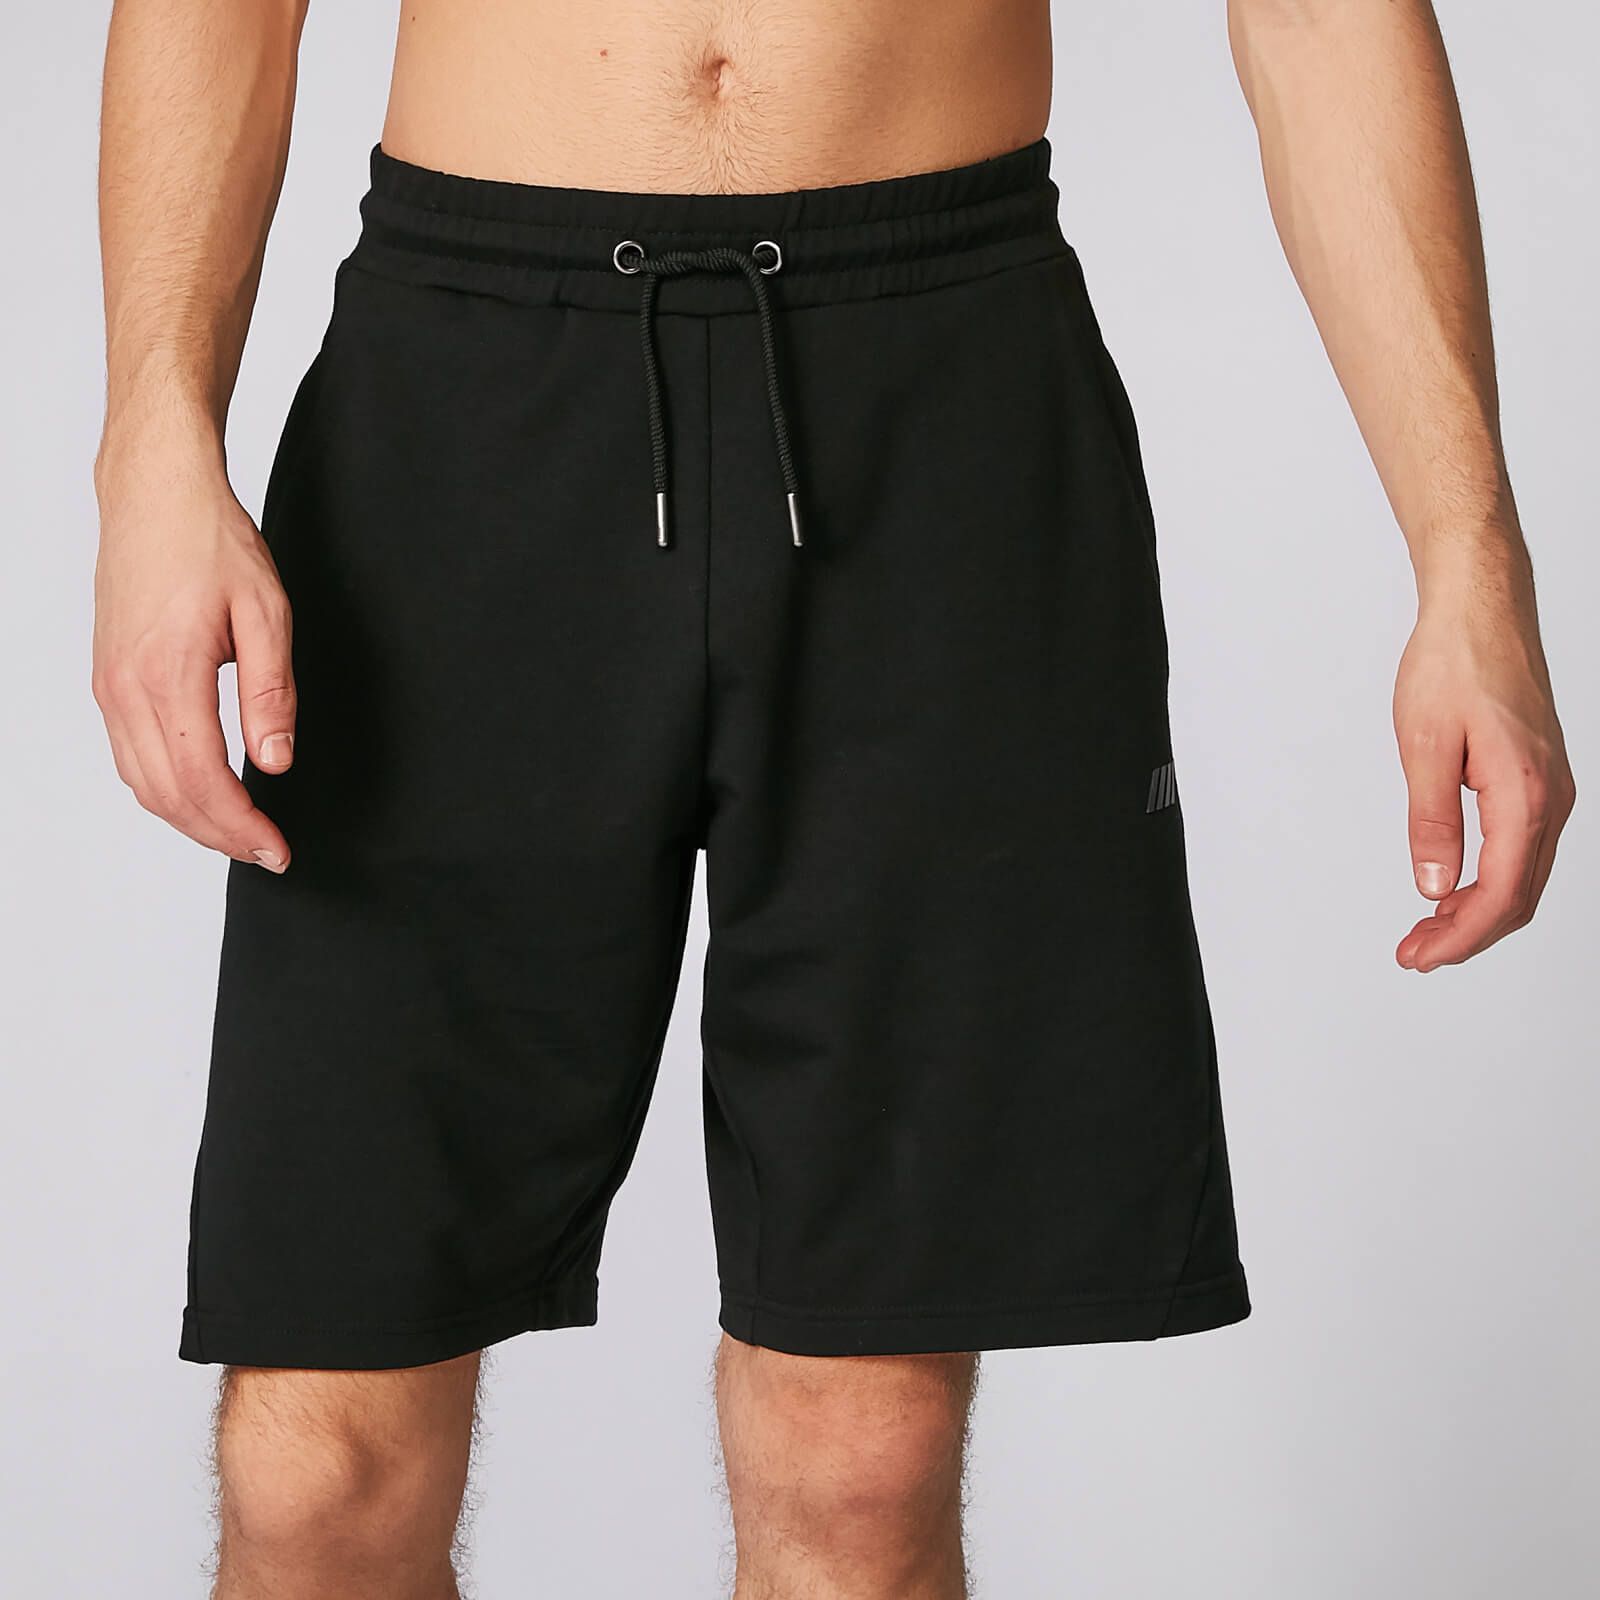 Form kratke hlače - Crne